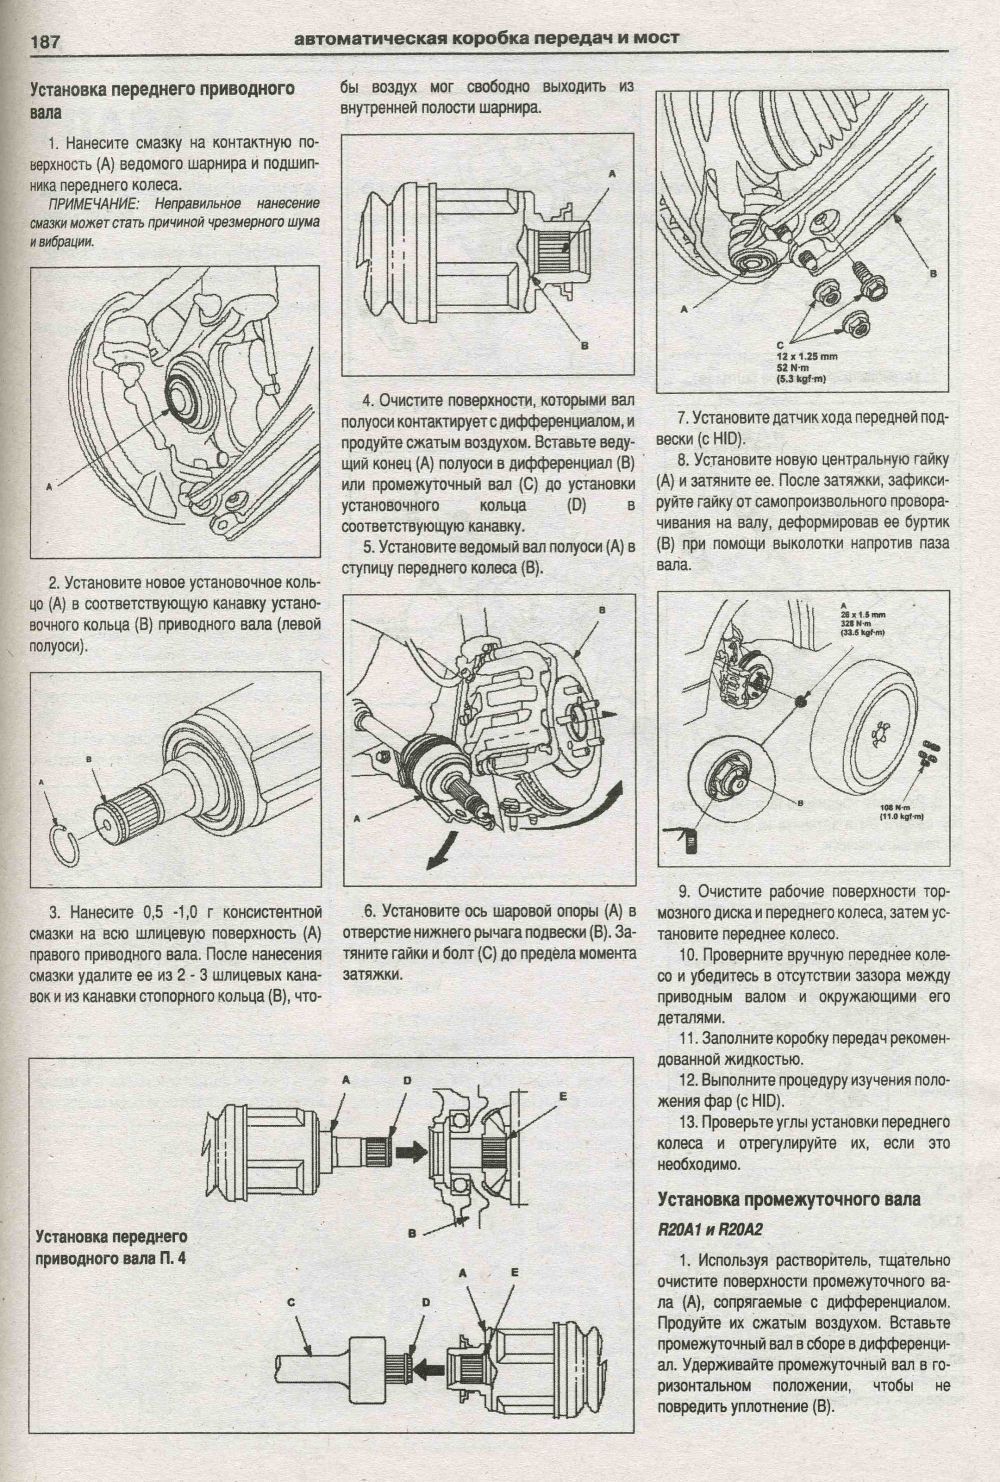 Книга Honda CR-V 2006-2012 бензин, электросхемы. Руководство по ремонту и эксплуатации автомобиля. Атласы автомобилей